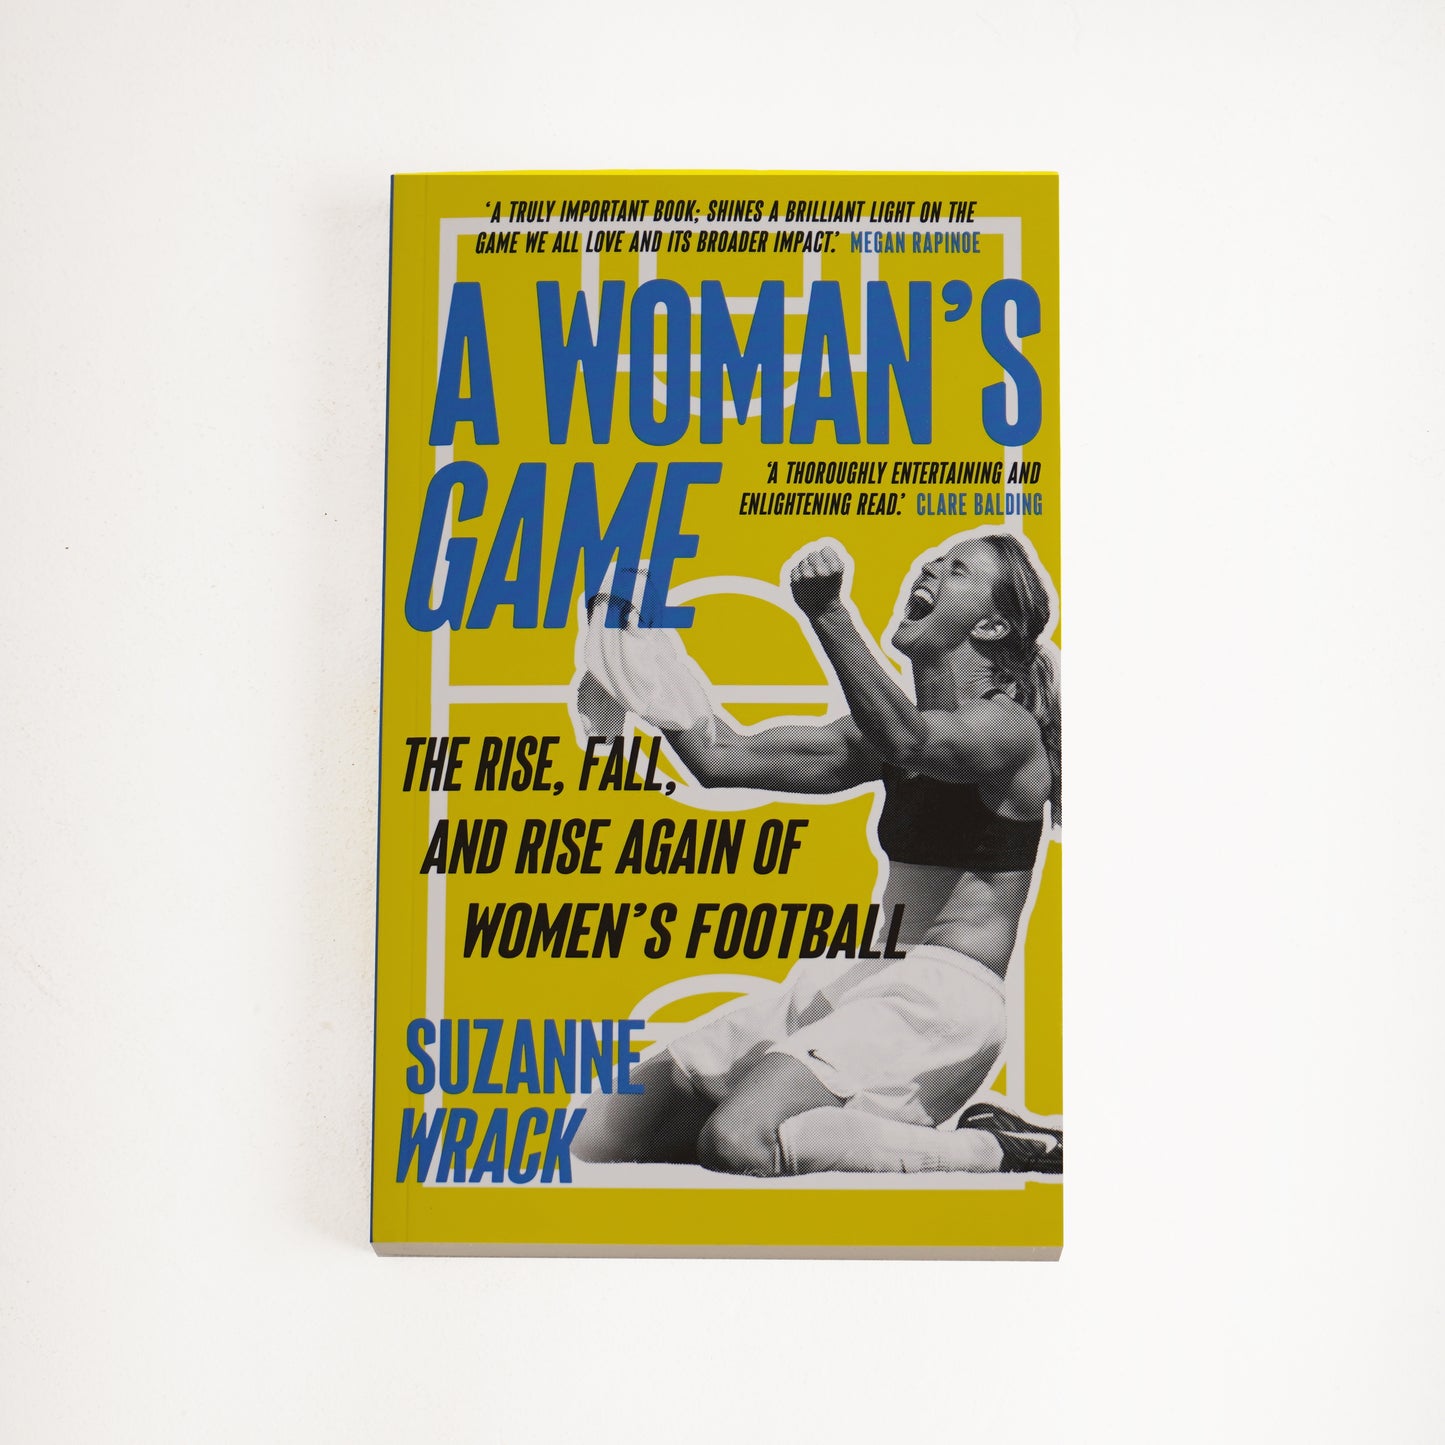 Conjunto de 2 libros de la colección Suzanne Wrack (Un juego de mujeres, tú tienes el poder)